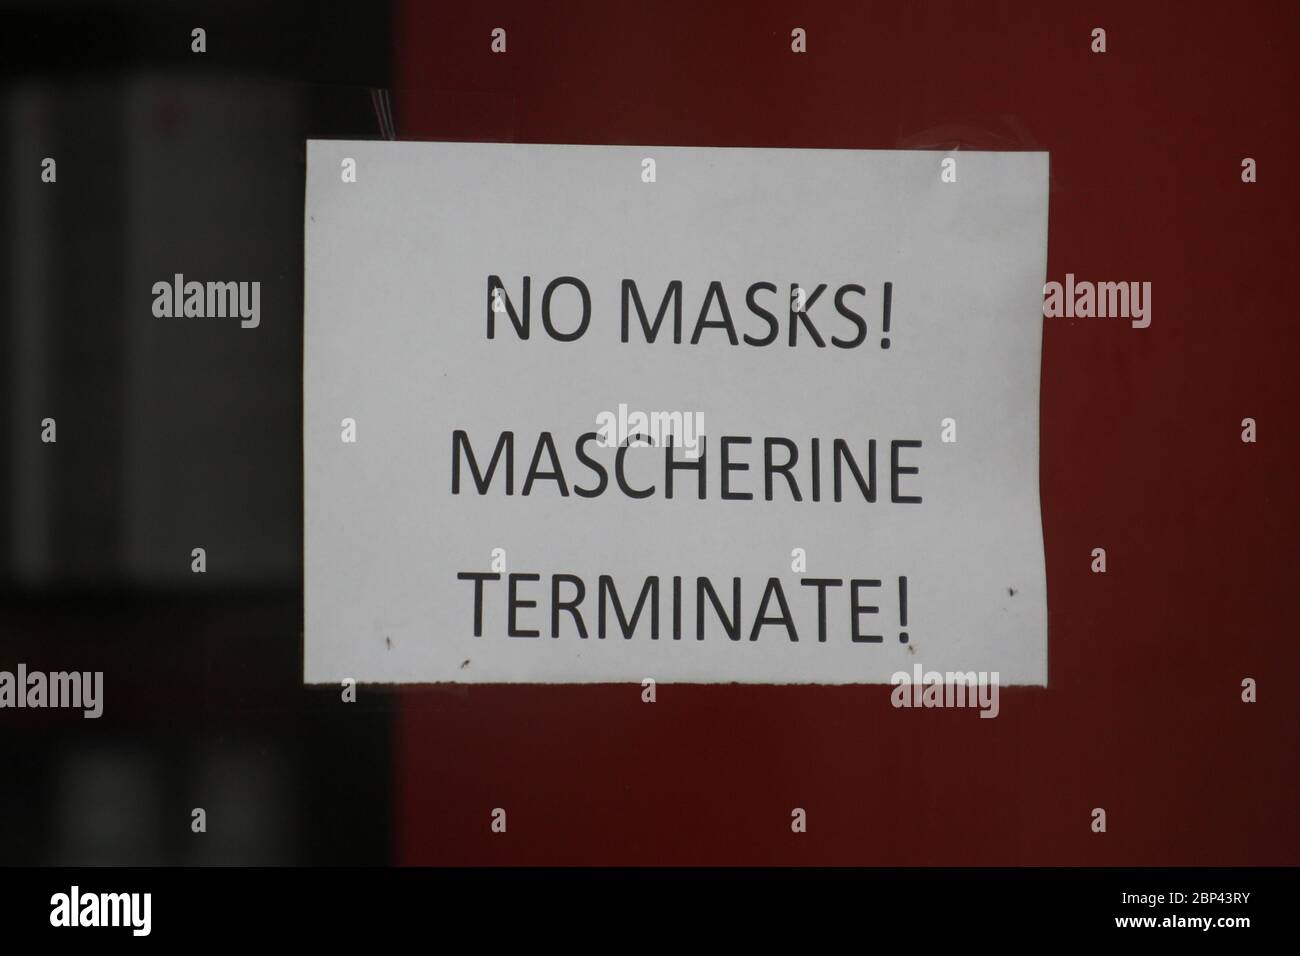 Roma, Italia, 17 maggio 2020: Cartello di una farmacia, maschere esaurite. Ultimo giorno di lockdown dopo quasi 3 mesi di quarantena per causa della pandemia Covid-19. Stock Photo